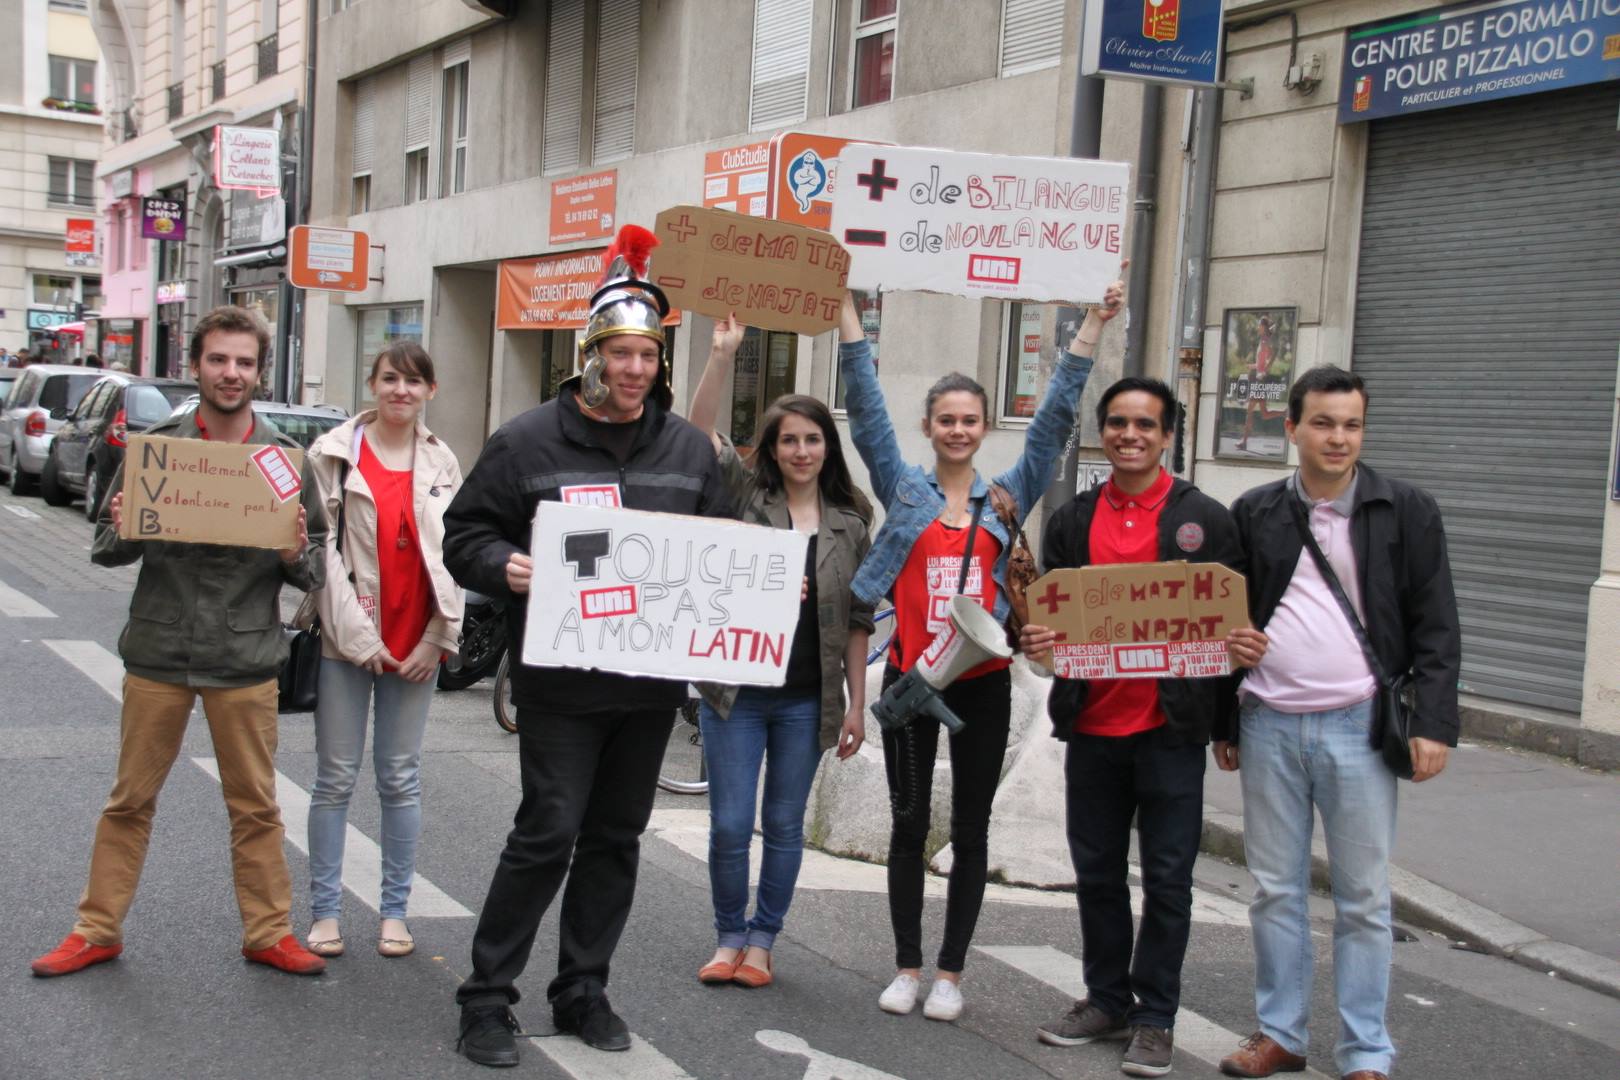 Collégiens, lycéens et étudiants se sont également joints au mouvement - LyonMag